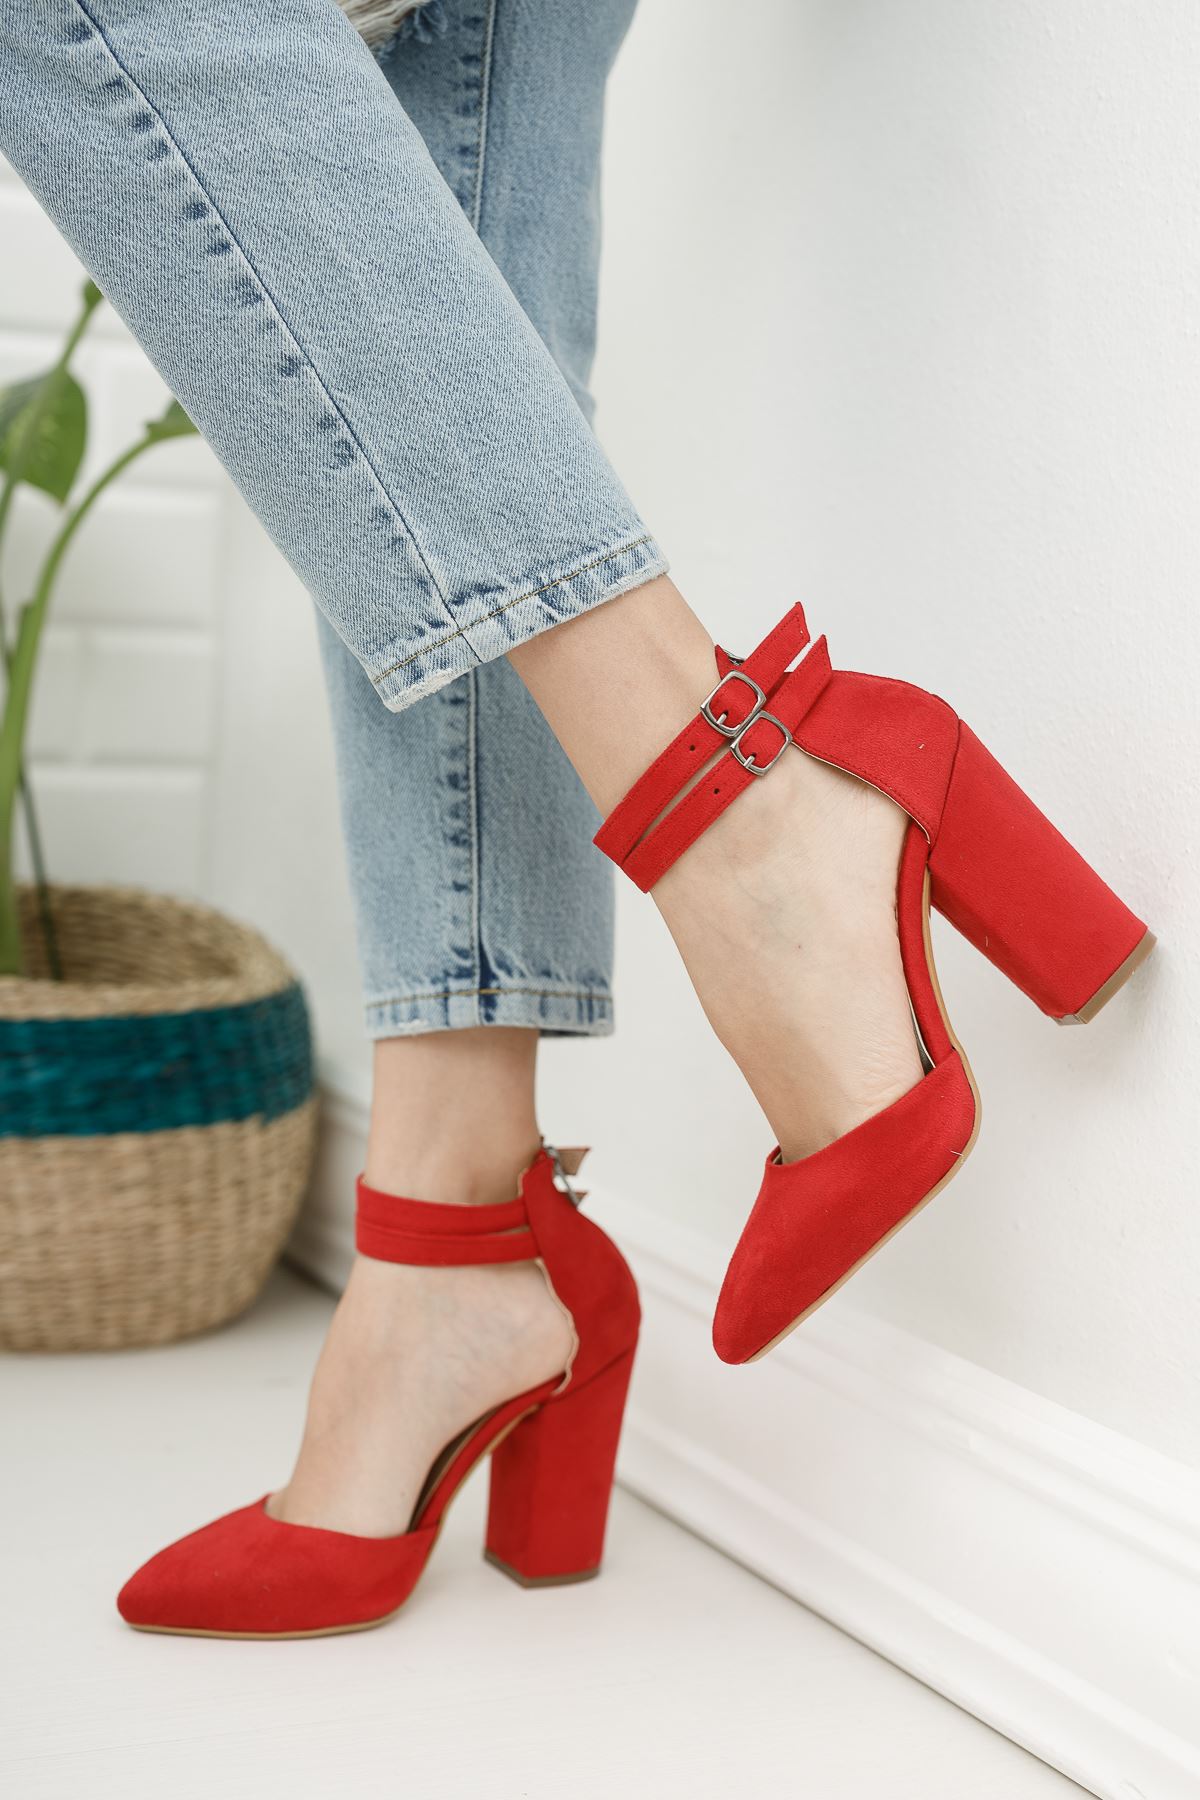 Kadın papun Çift Toka Detay Kalın Topuklu Kırmızı Süet Ayakkabı